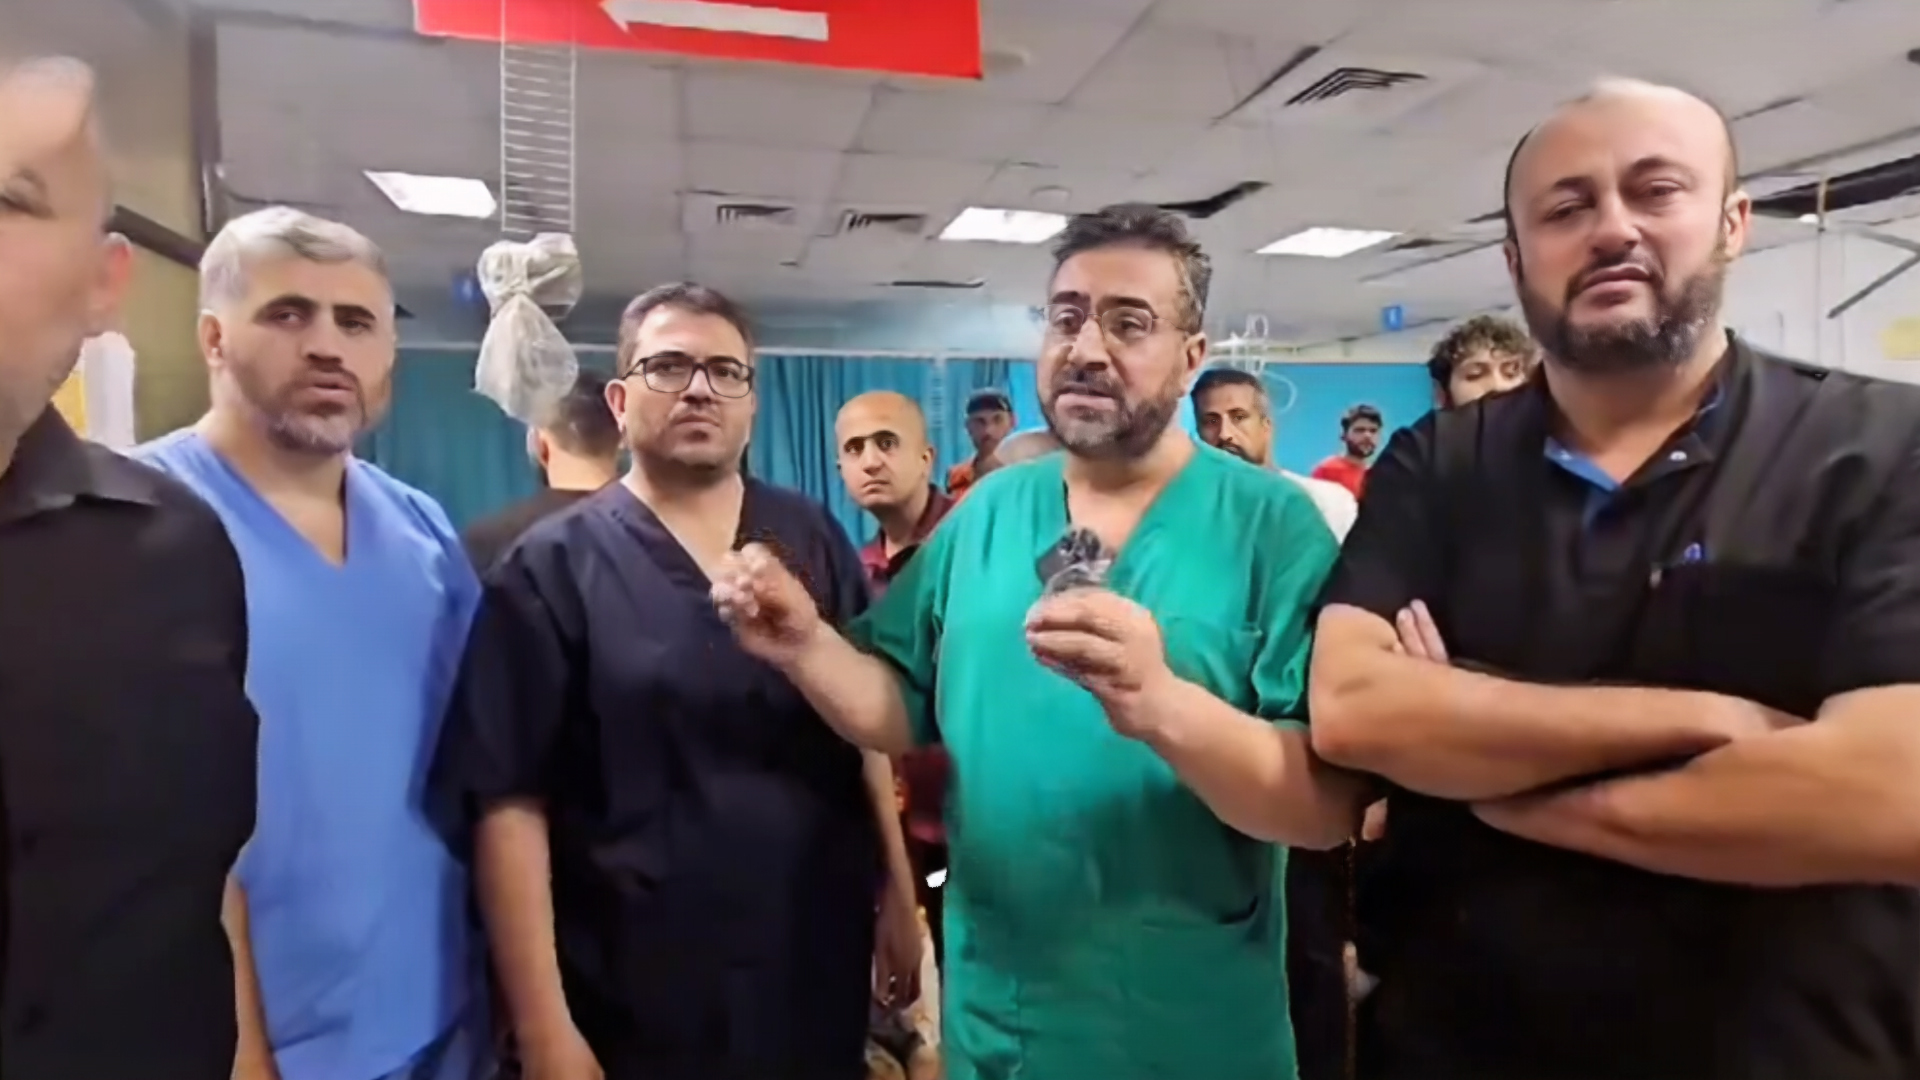 المستشفى الإندونيسي بغزة يعلن توقفه عن العمل | التقارير الإخبارية – البوكس نيوز